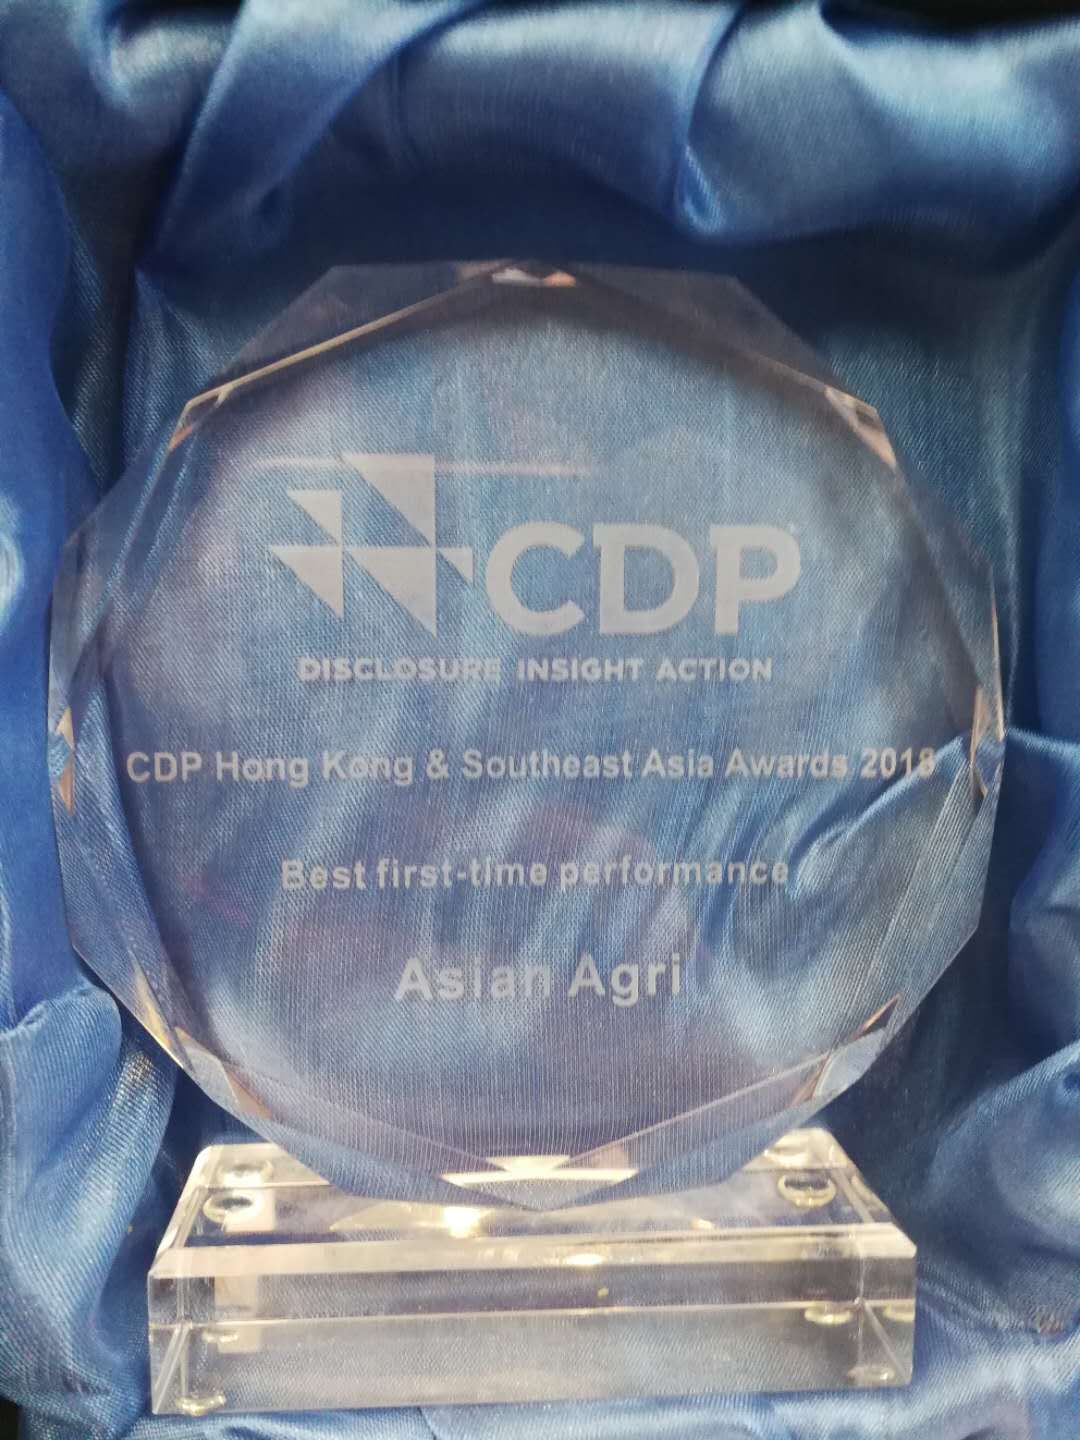 Asian Agri Menerima Penghargaan CDP sebagai ‘Best First Time Performance’